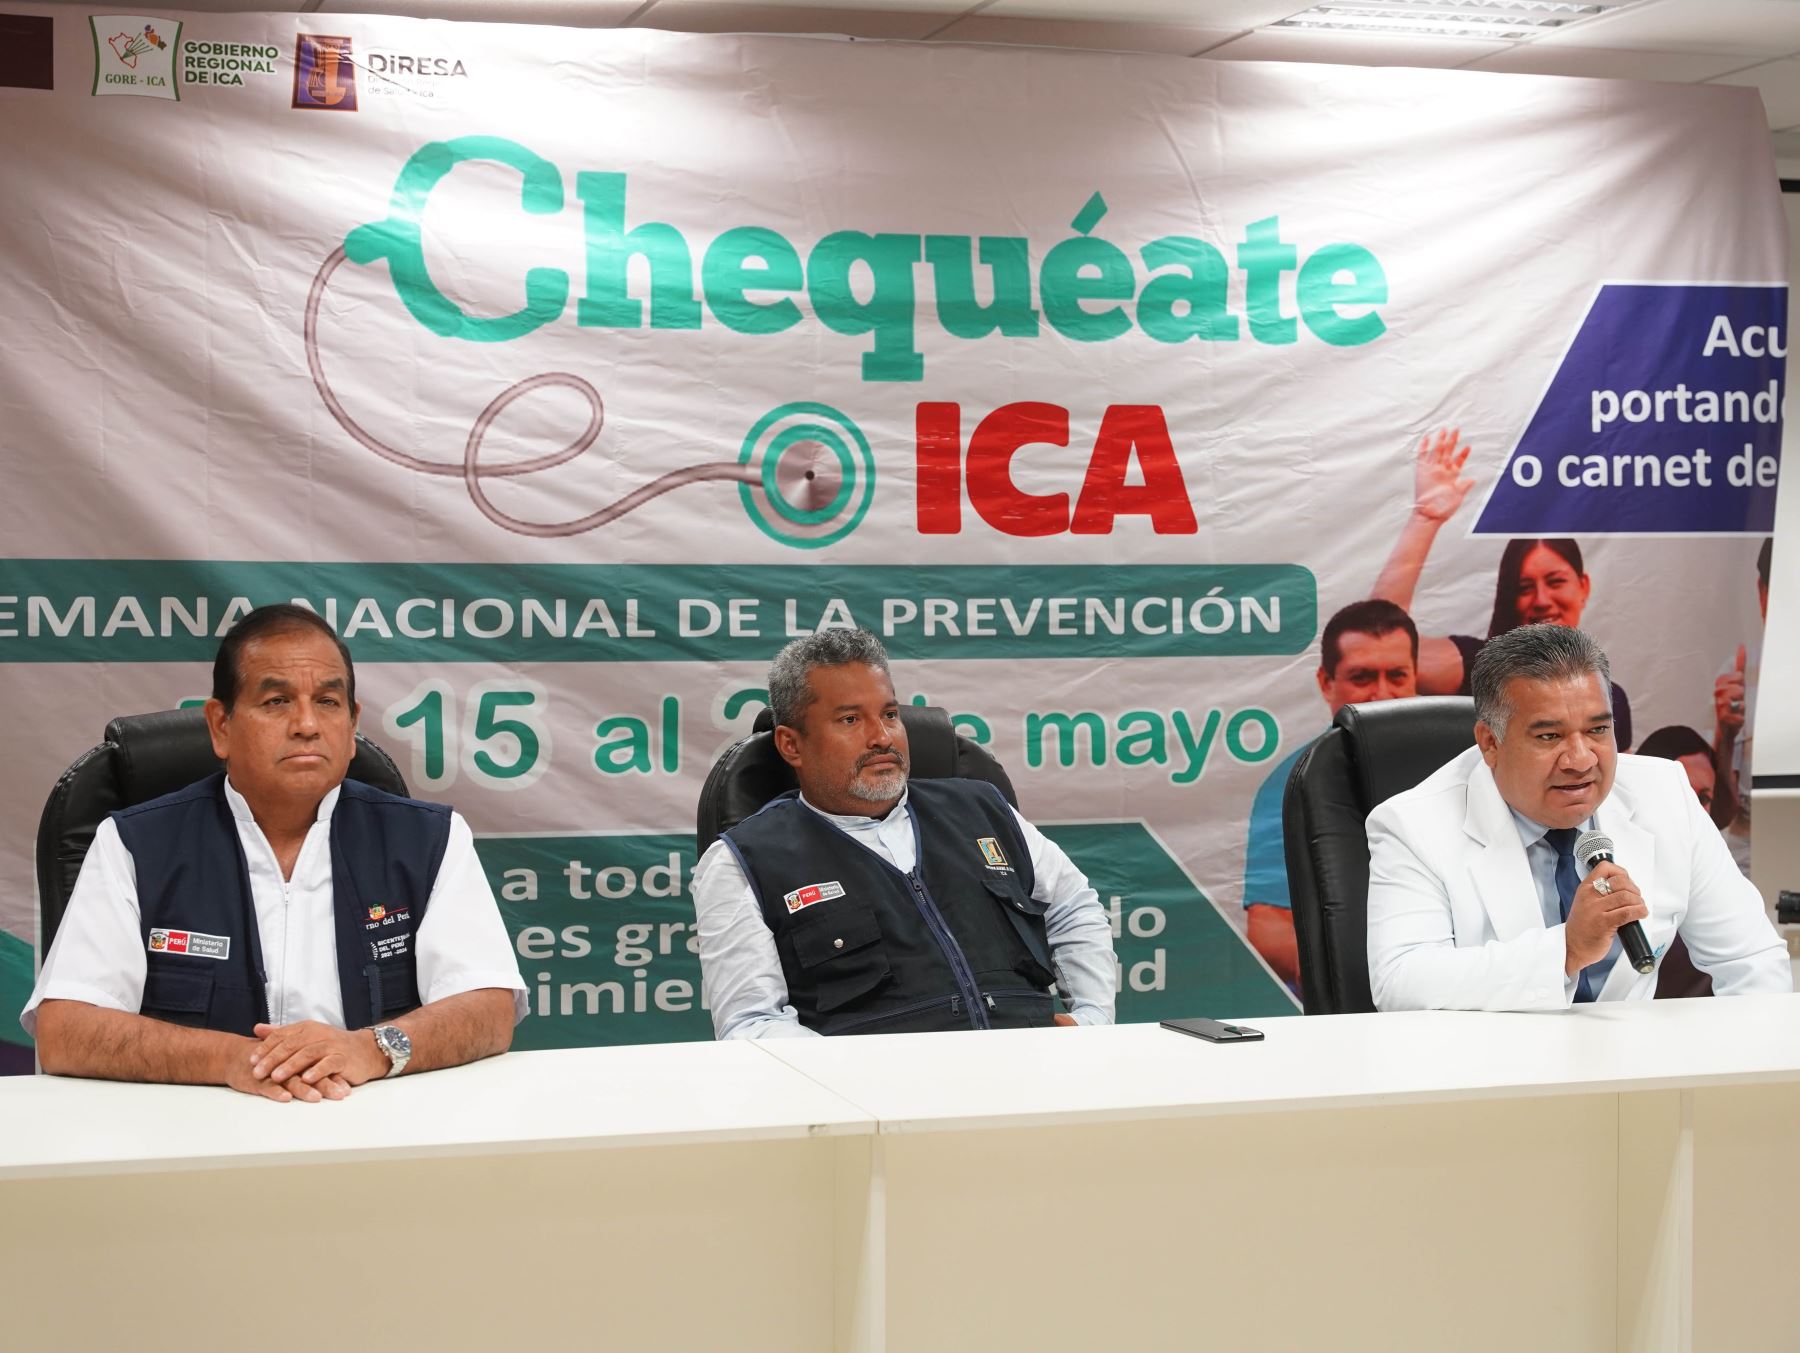 Autoridades de Salud de Ica prevén atender a 46,000 personas durante semana de la prevención Chequéate Ica, que se inició ayer. Foto: Genry Bautista.